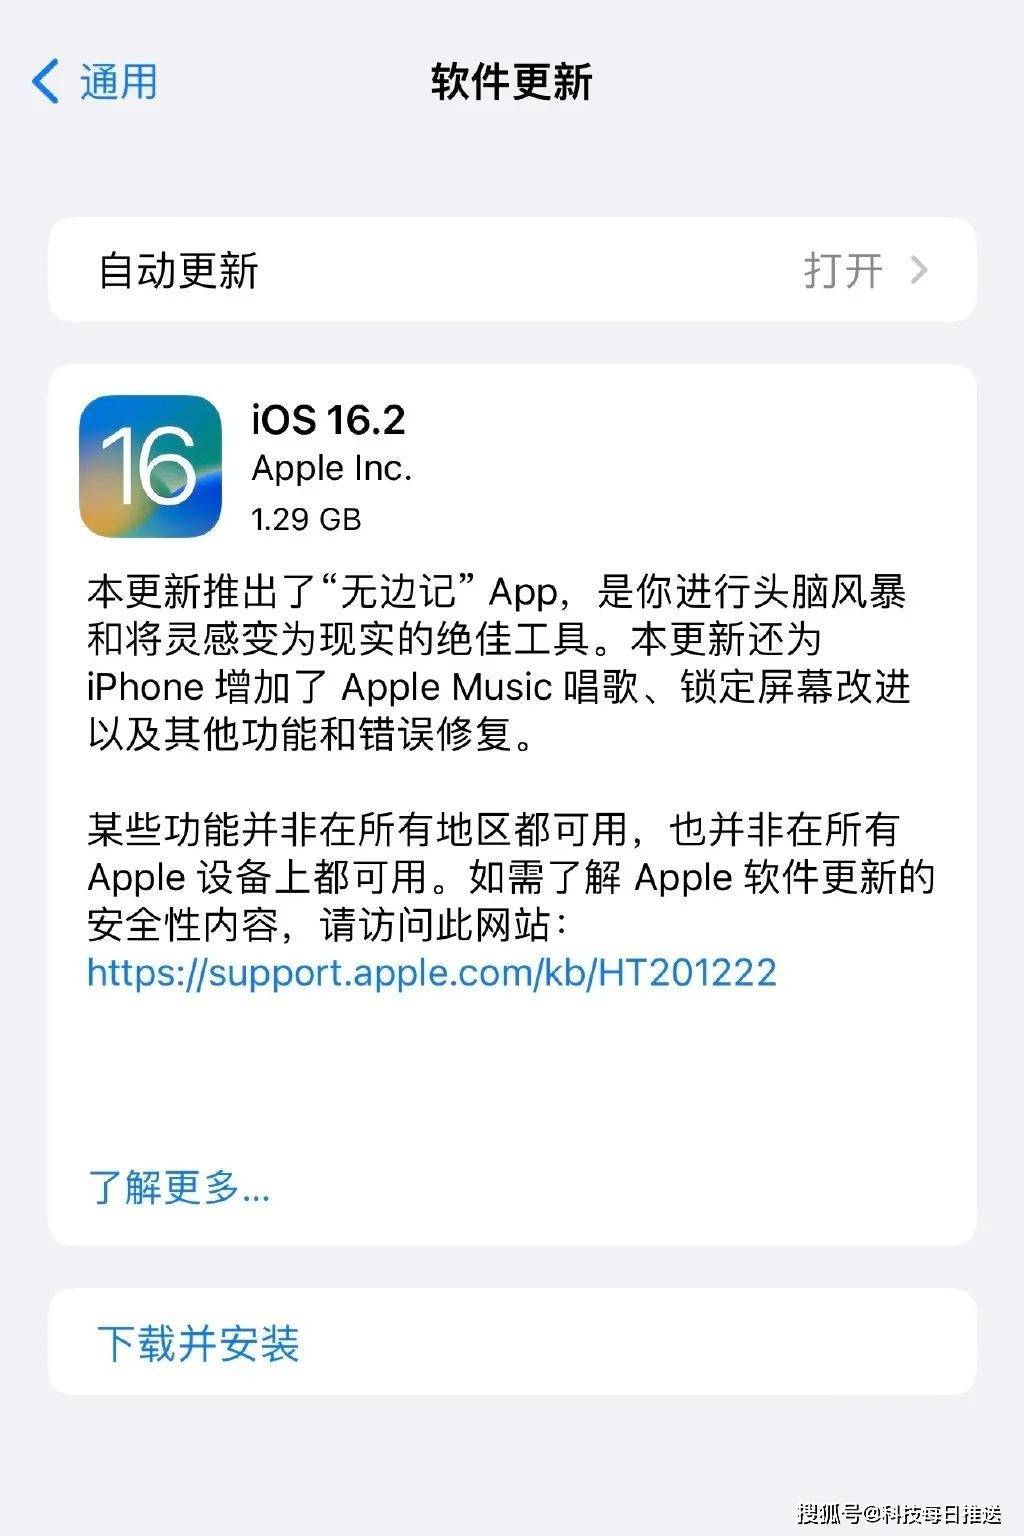 天气预报无广告纯净版苹果:iOS 16.2正式版发布，新增唱K功能